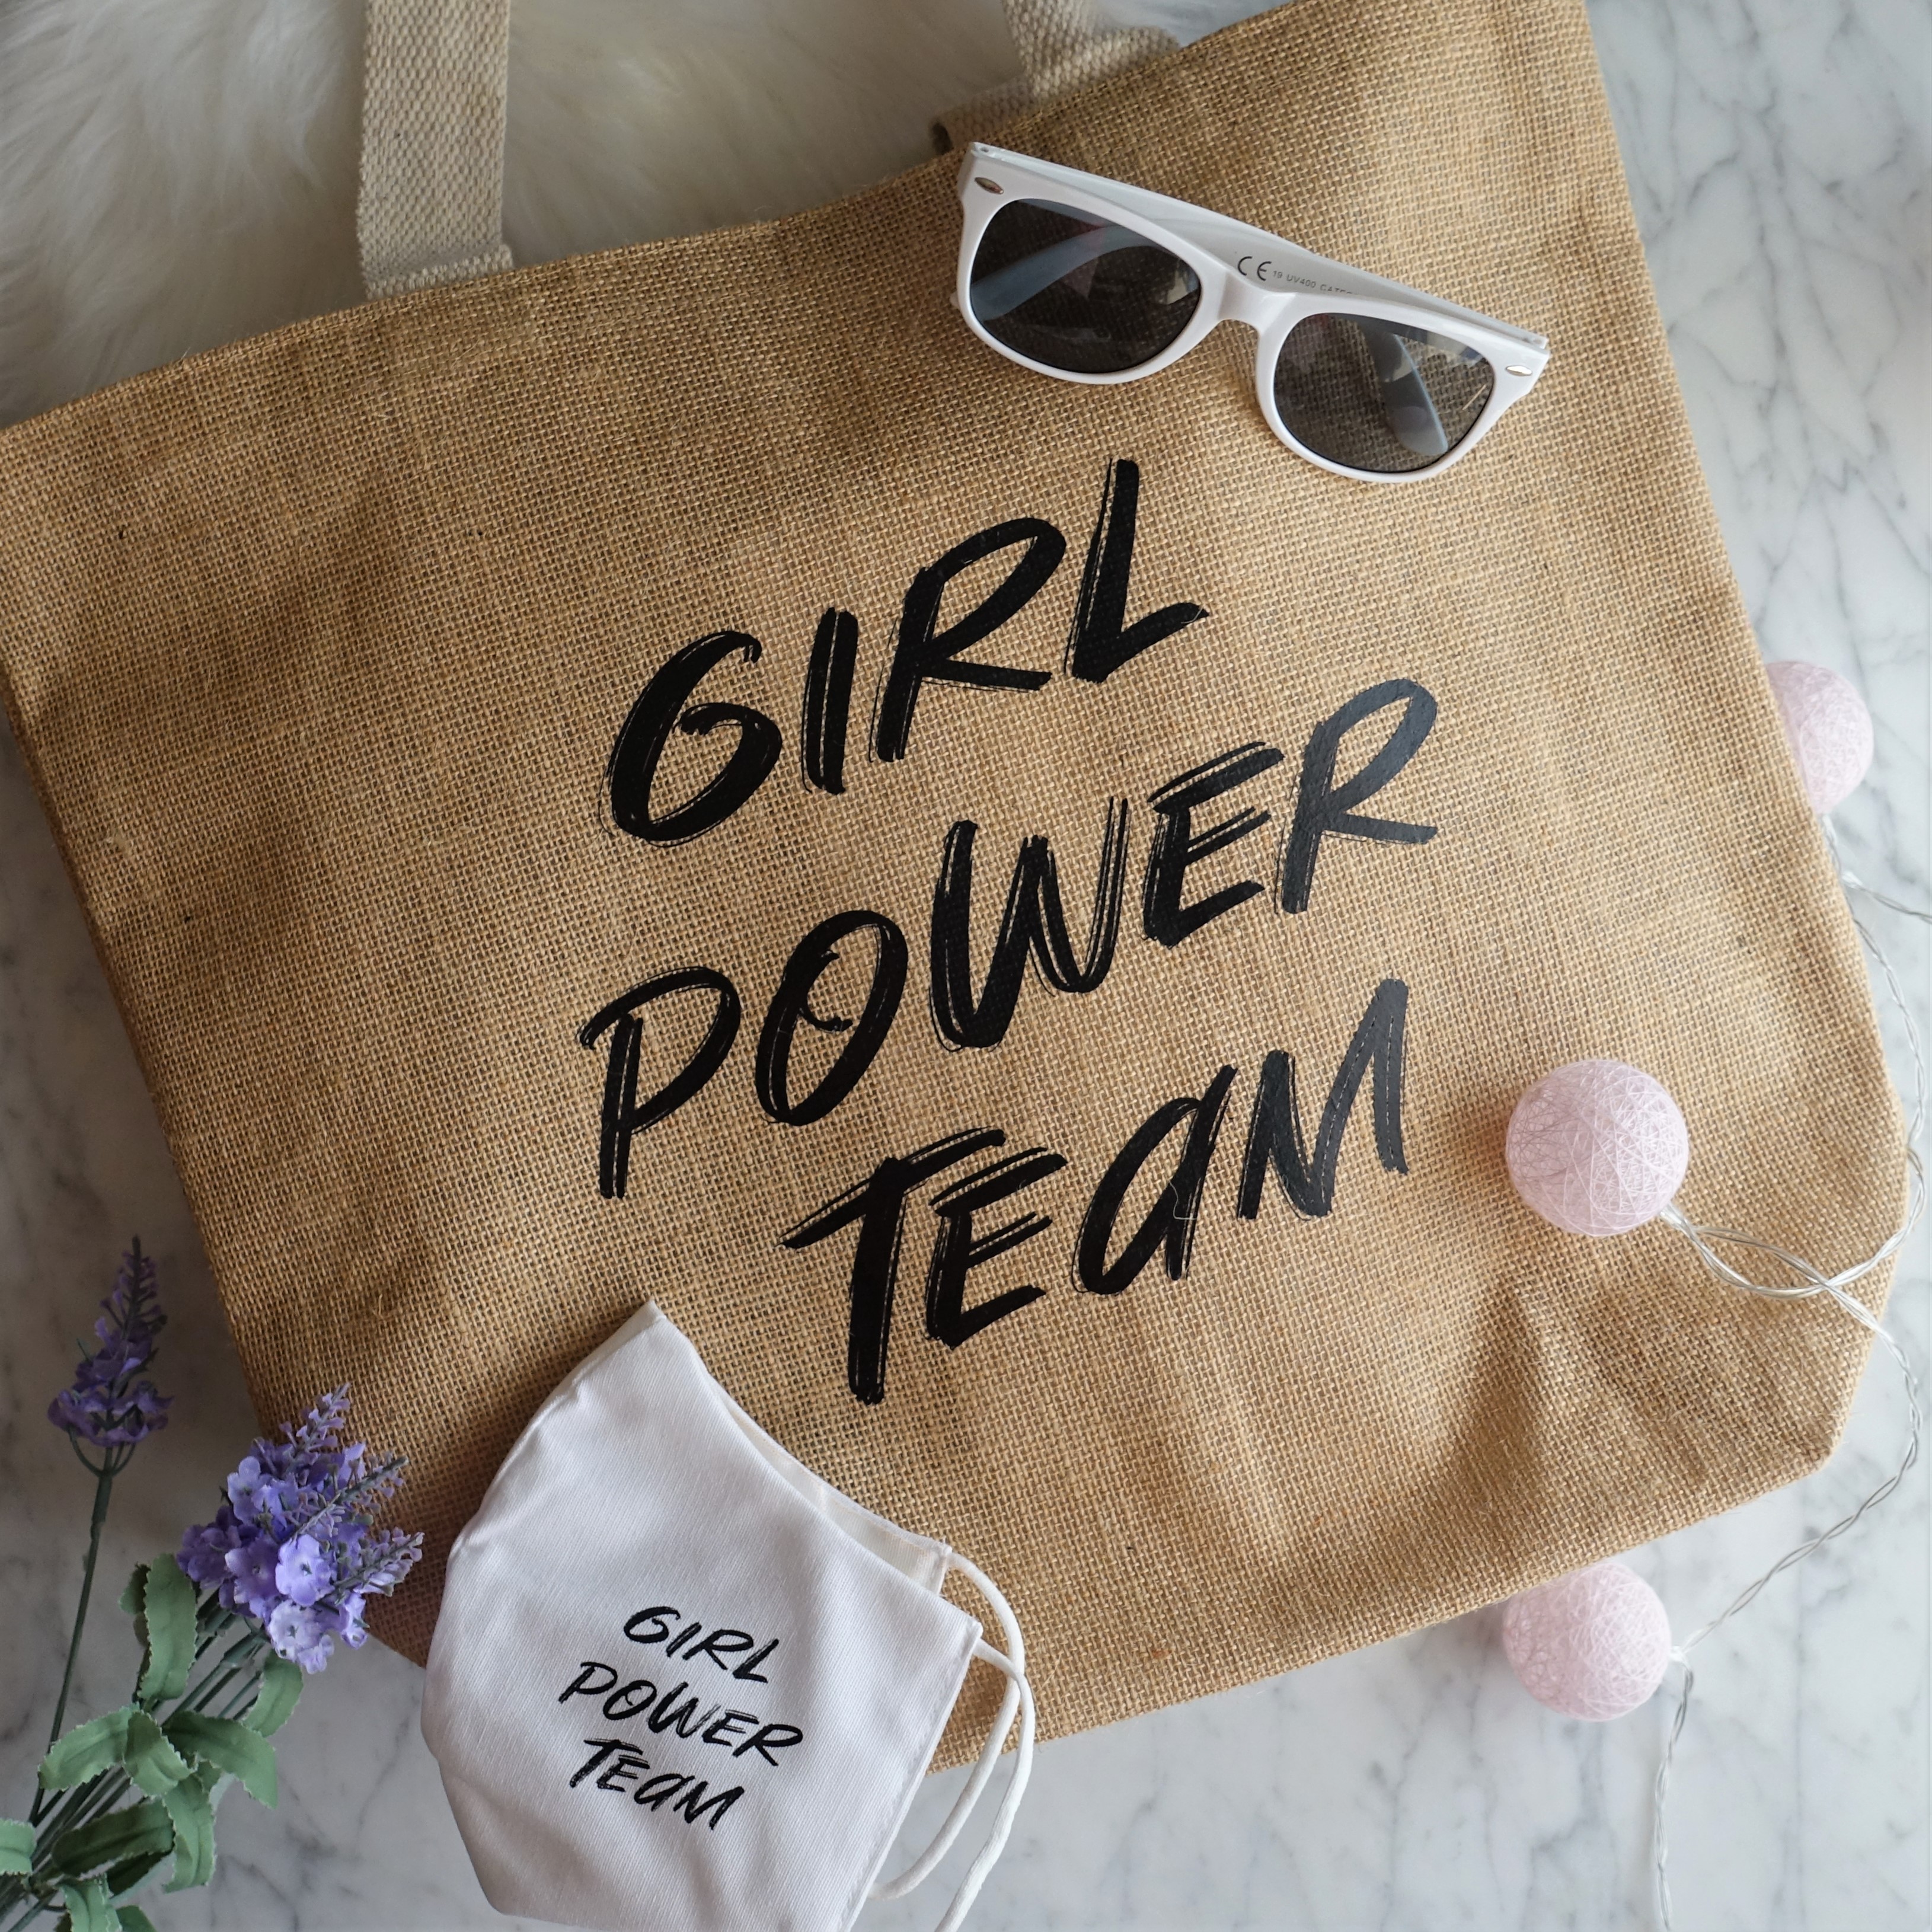 Bolsa y mascarilla de Gift Campaign (Evento #YBB8ED de Girl Power Team)(2)